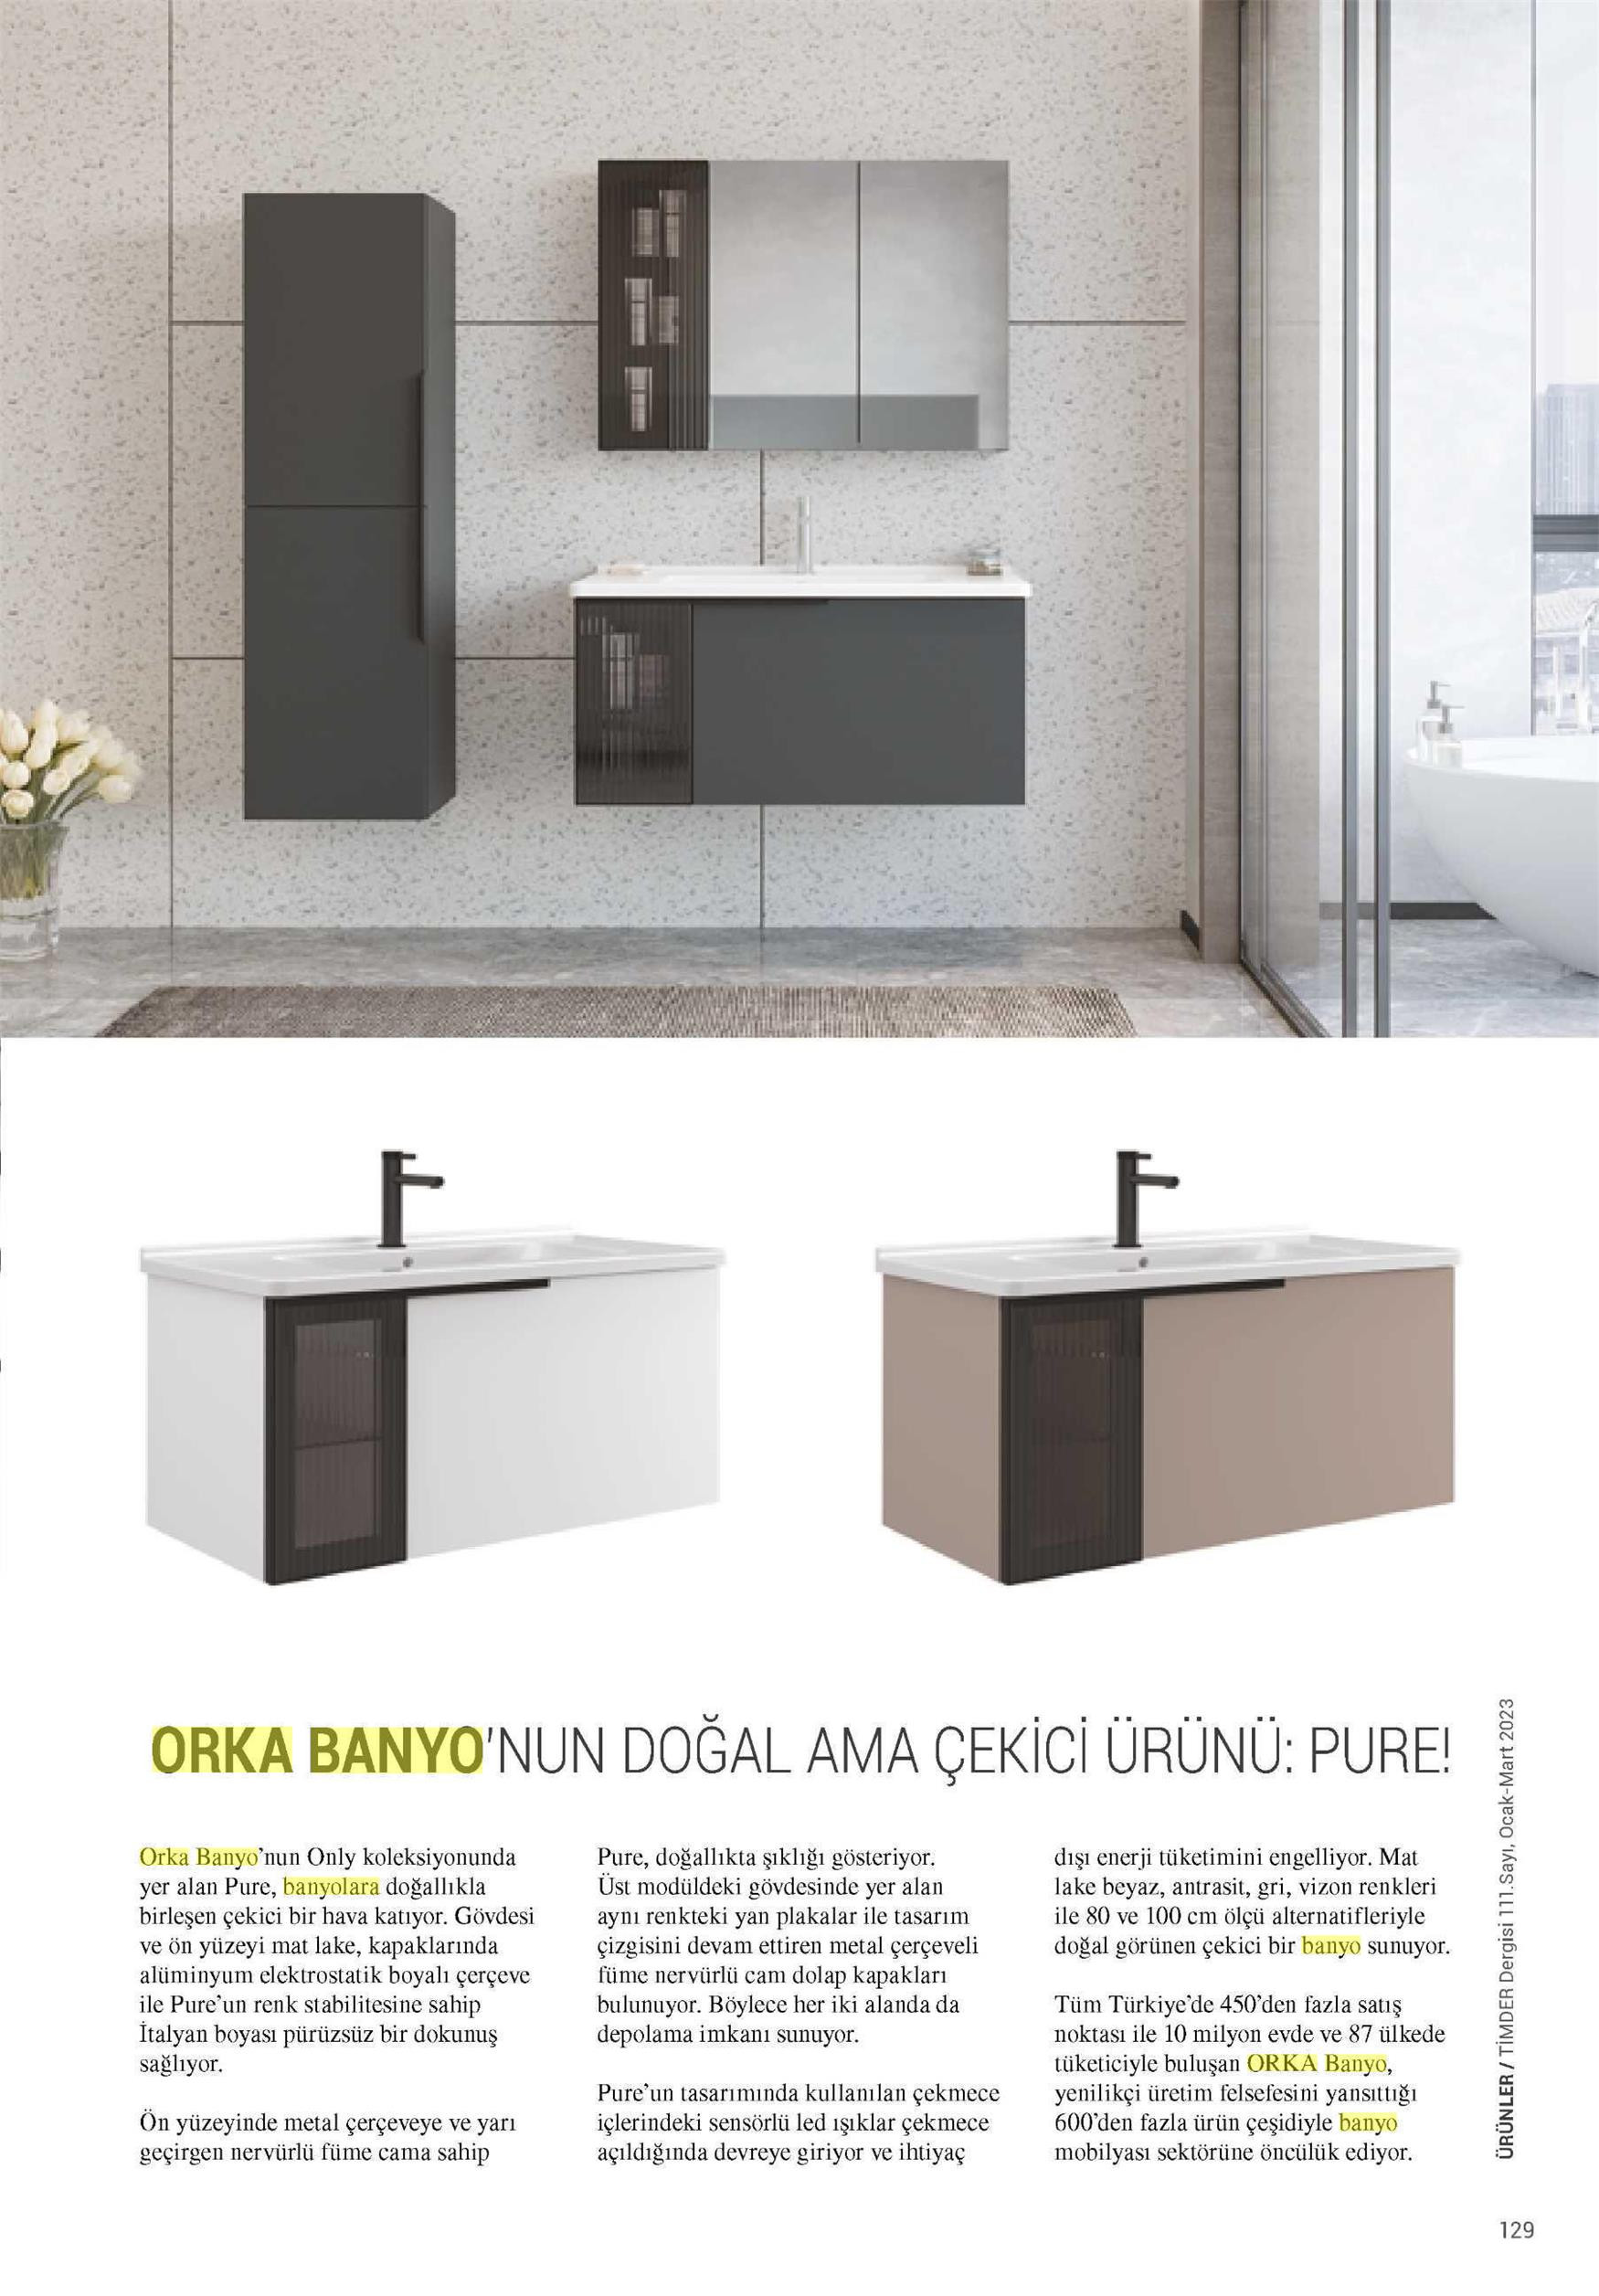 Le produit naturel mais attrayant de ORKA Bathroom : PURE!